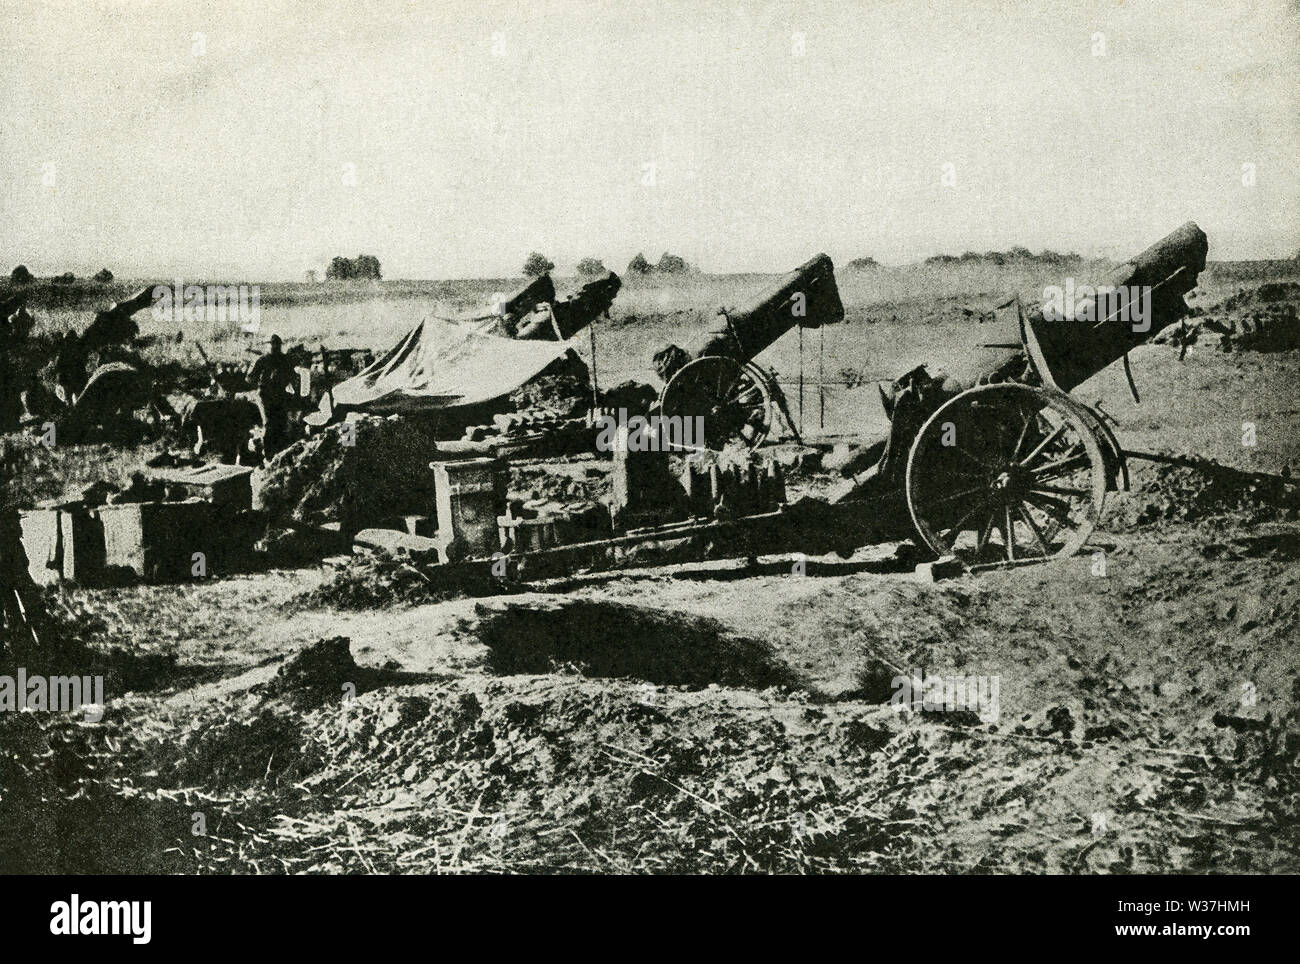 Cette photo, datant d'avant 1922, a trait à la Première Guerre mondiale. Le sous-titre suivant : canons lourds à Château-Thierry fait victoire possible. Banque D'Images